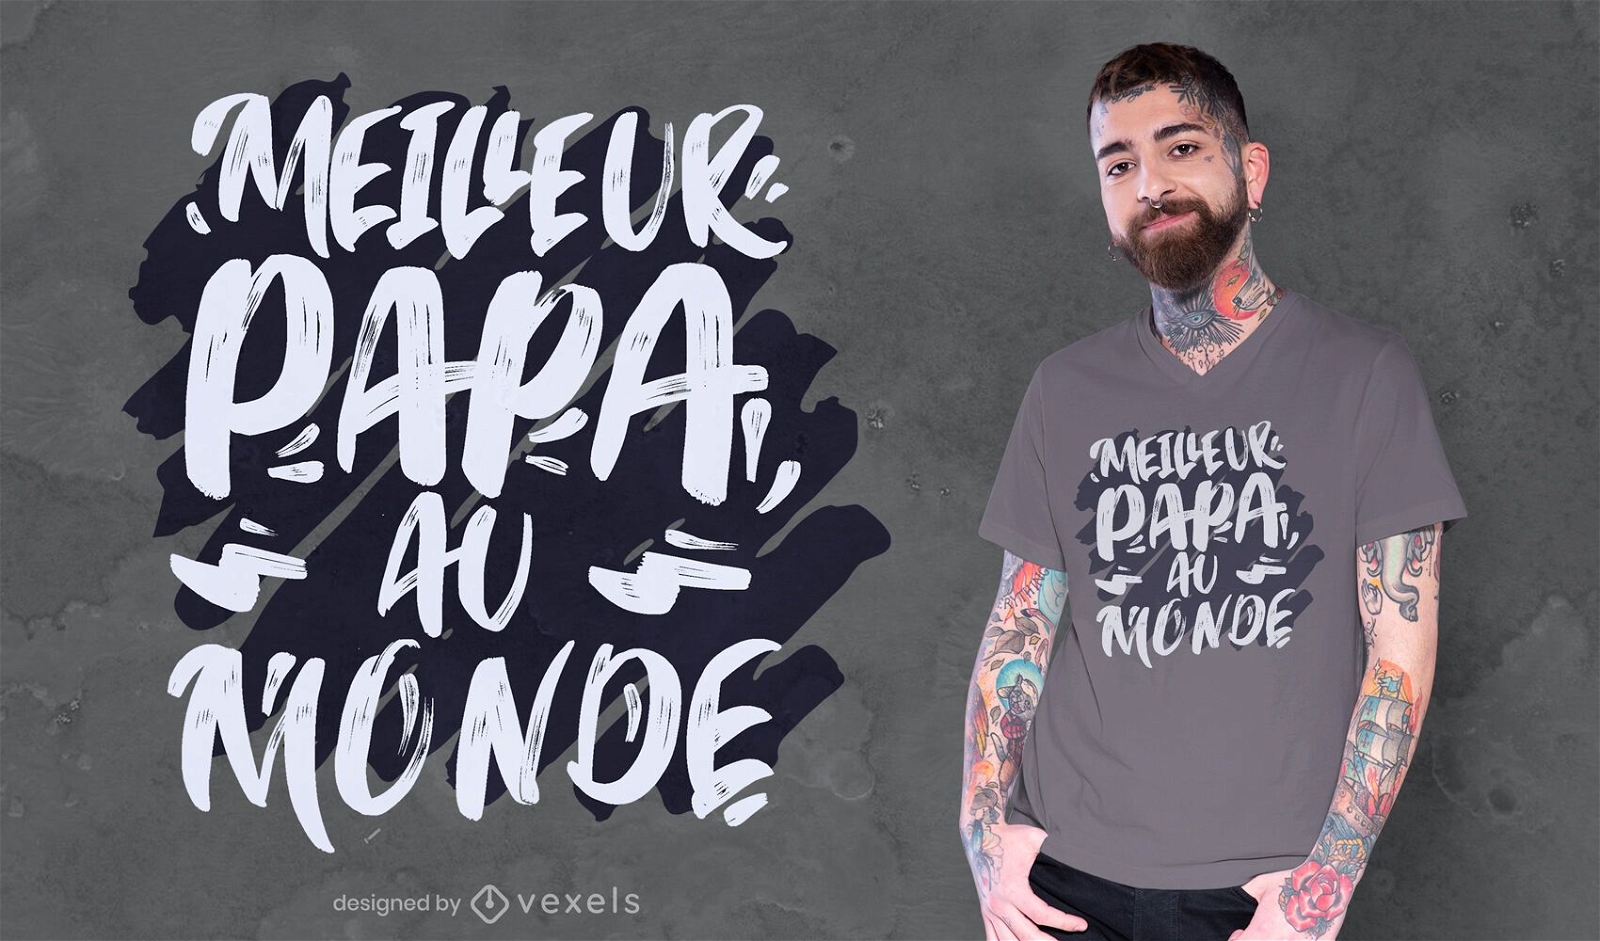 Melhor design de t-shirt de citação francesa para o pai